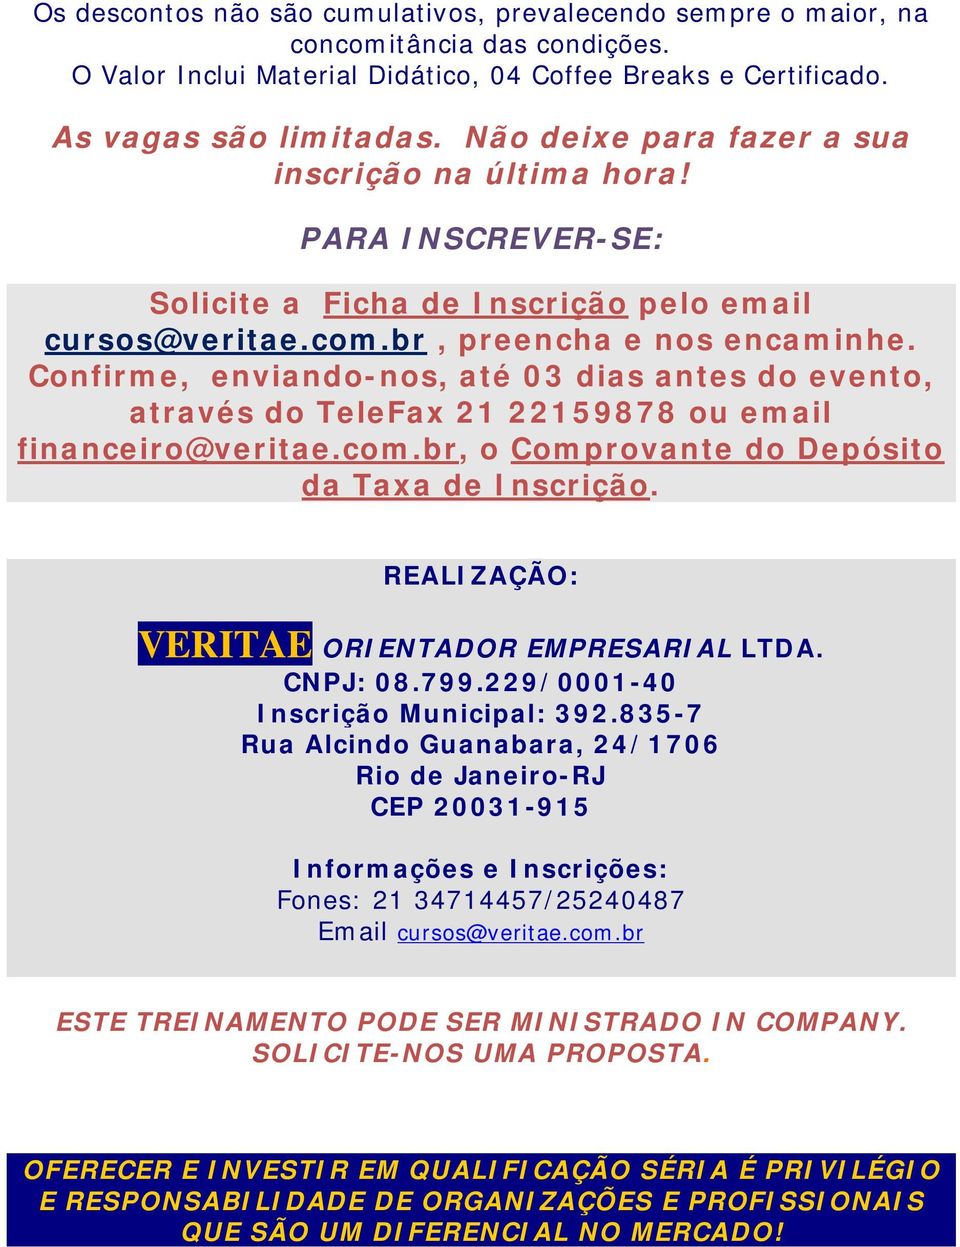 Confirme, enviando-nos, até 03 dias antes do evento, através do TeleFax 21 22159878 ou email financeiro@veritae.com.br, o Comprovante do Depósito da Taxa de Inscrição.